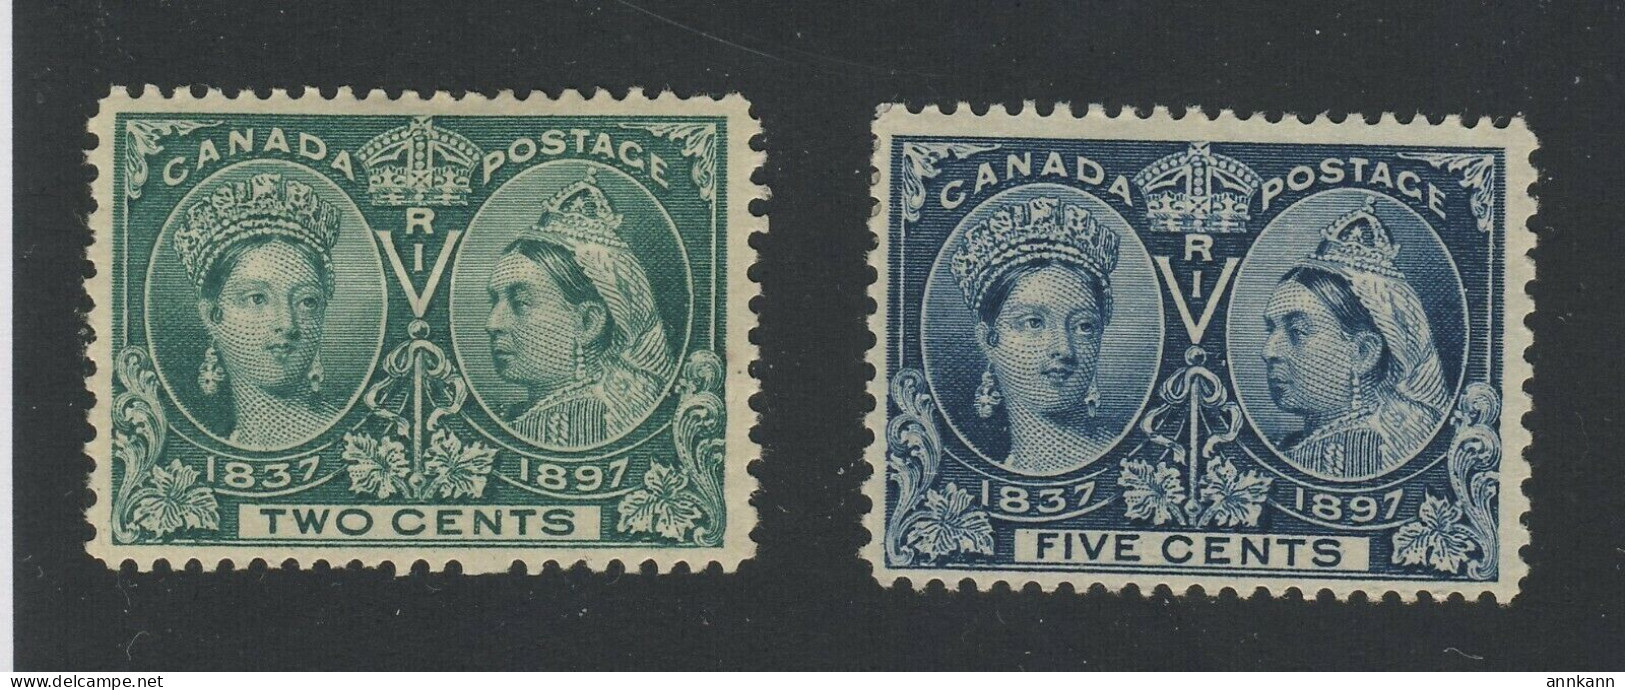 2x Canada Victoria Jubilee MH Stamps #52-2c MHR VF 54-5c MH Thin F/VF GV= $95.00 - Nuovi